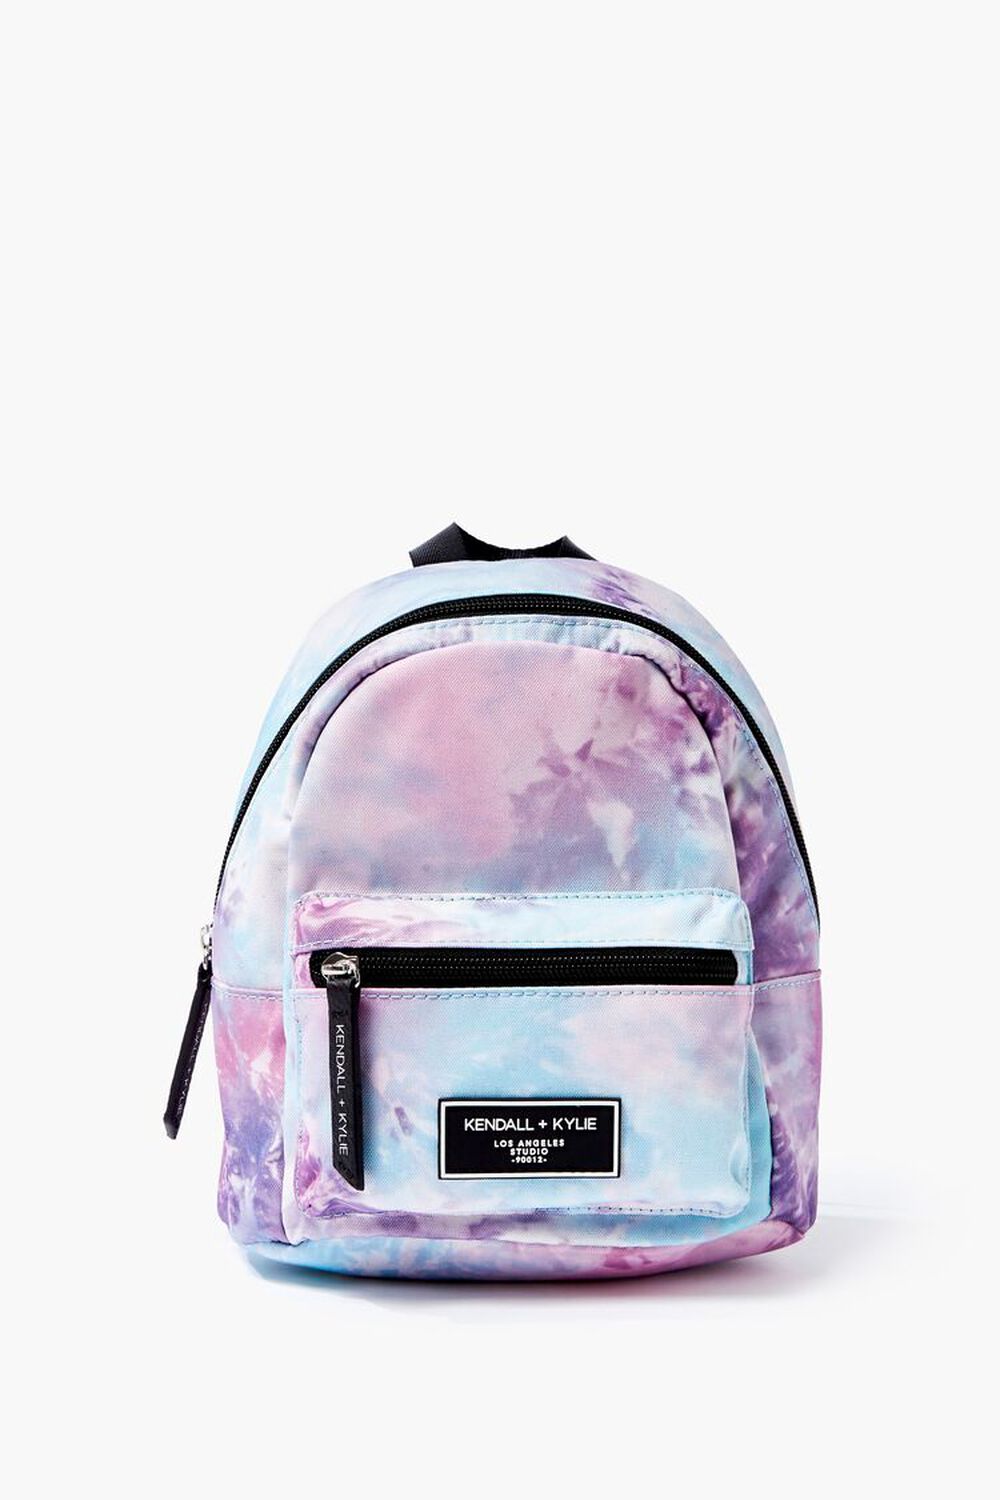 BLUE/MULTI Kendall & Kylie Tie-Dye Backpack, image 1